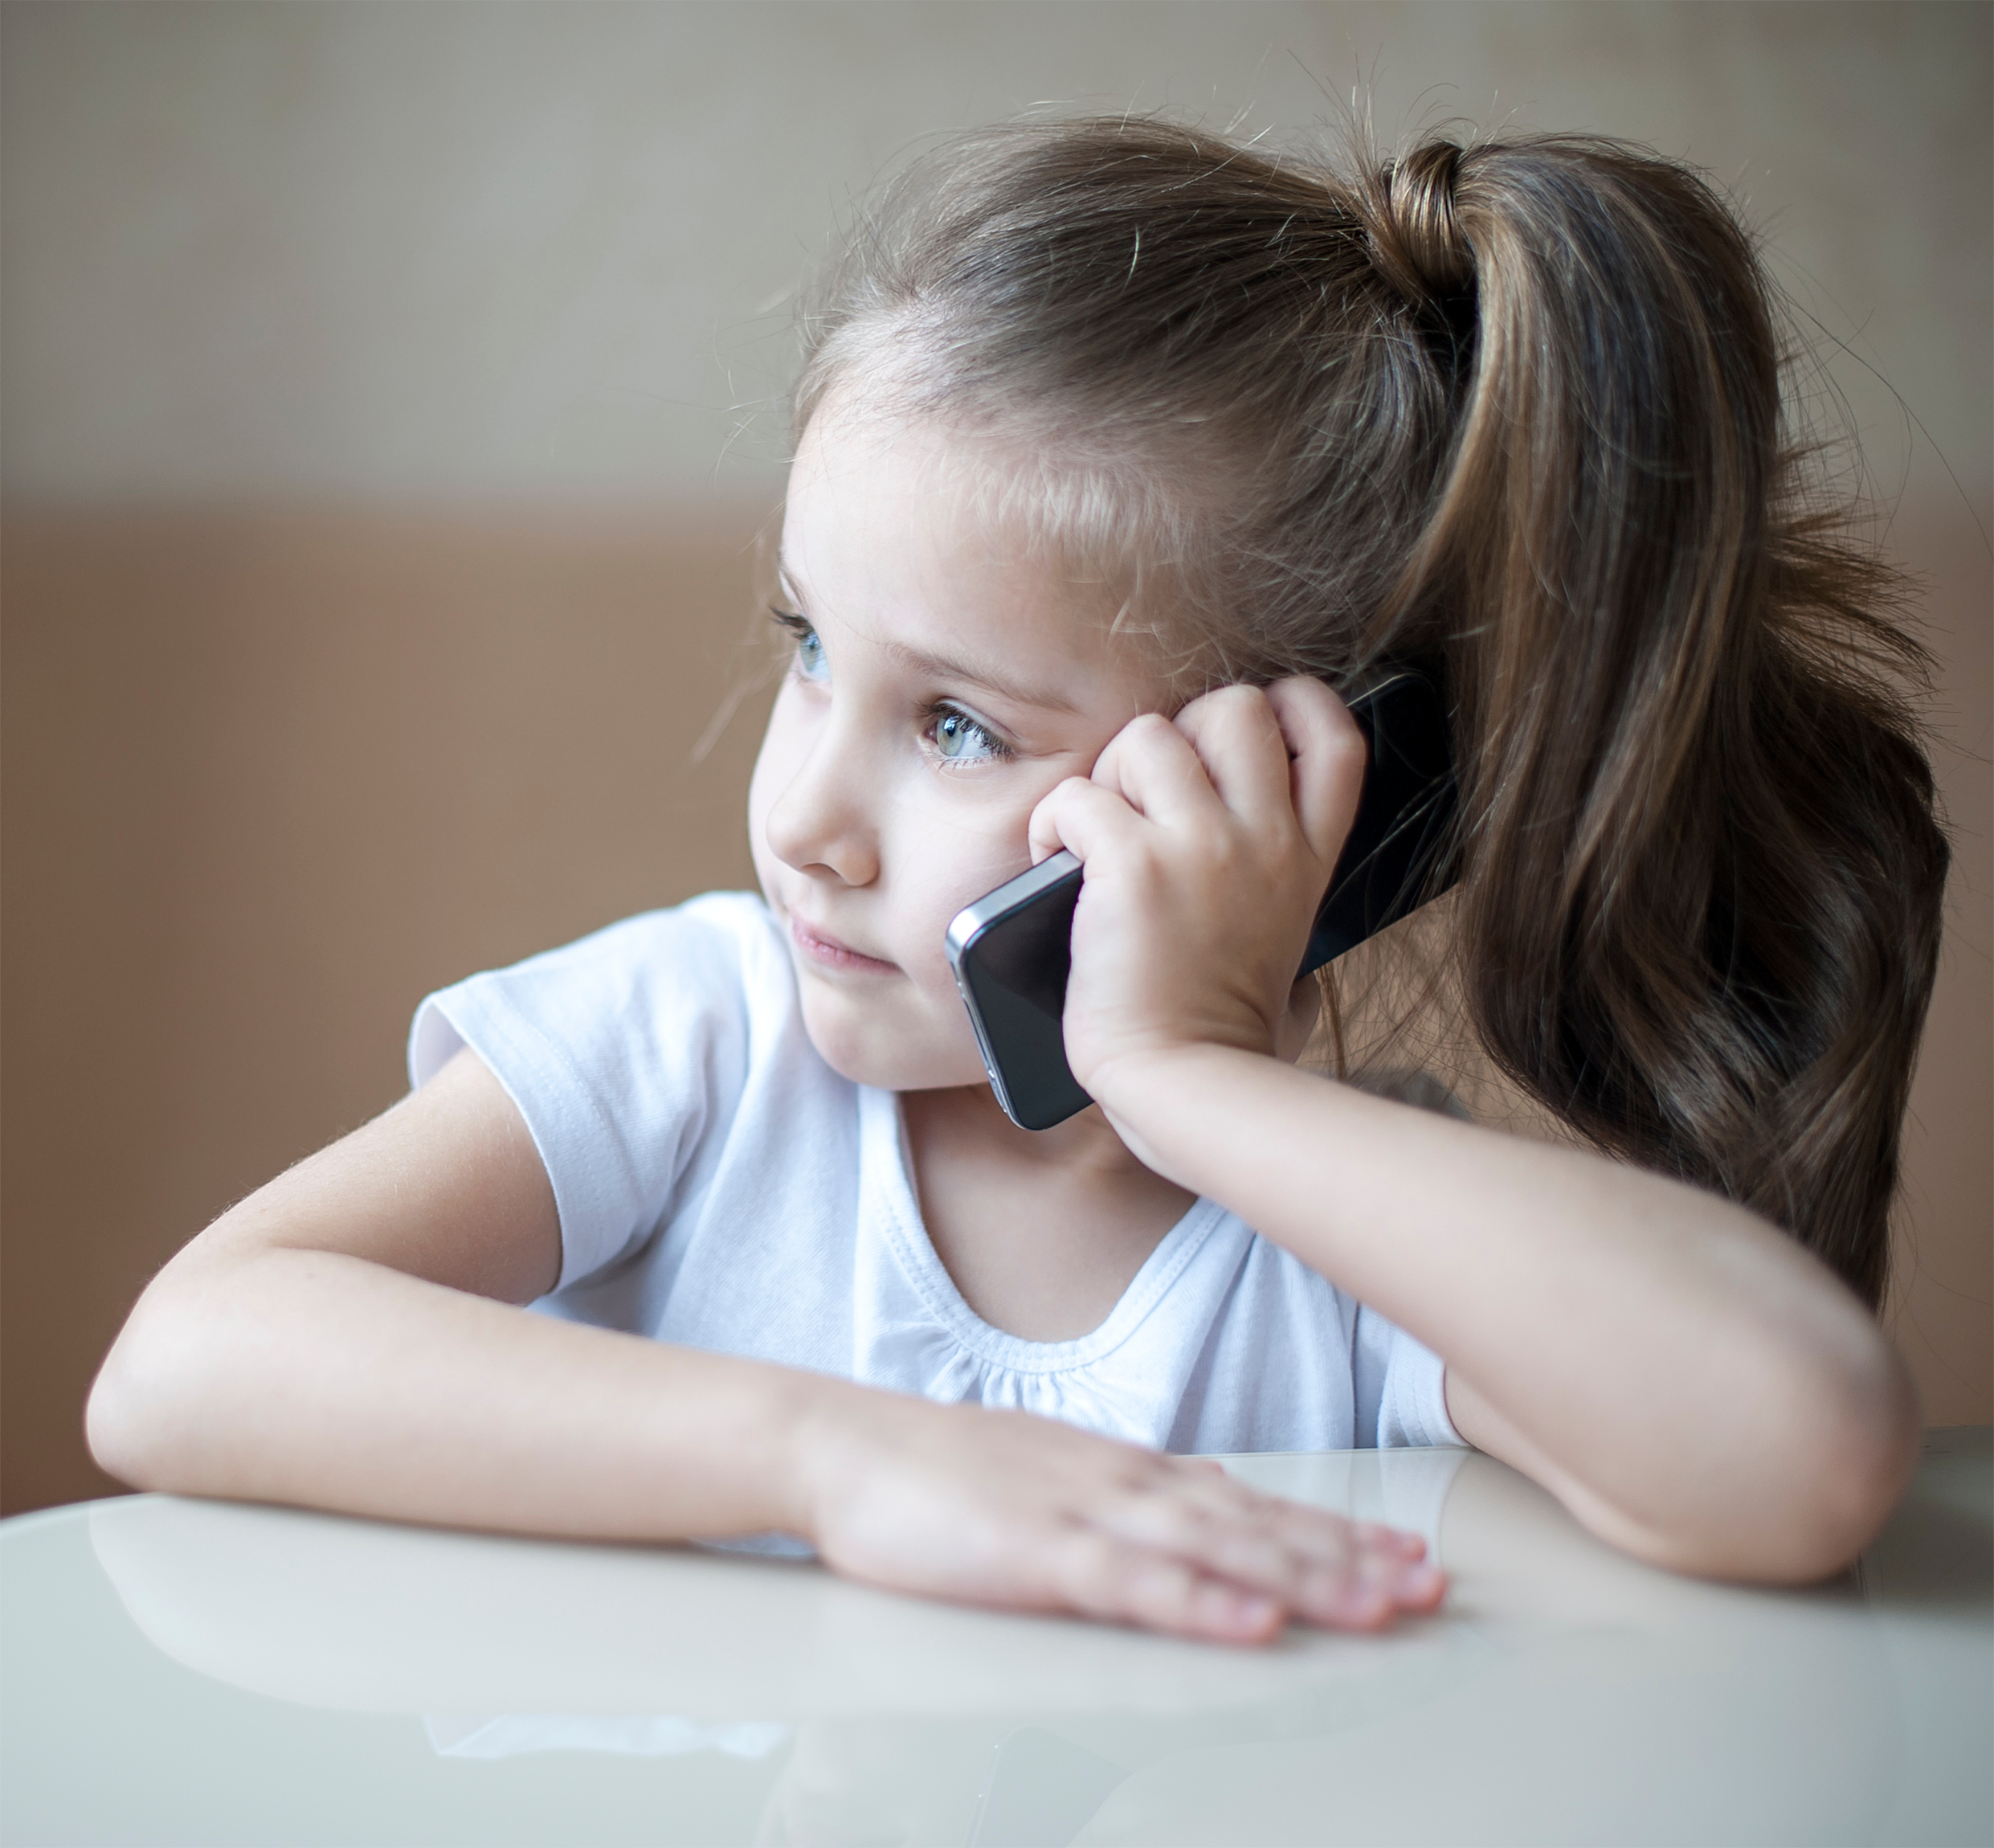 Niña hablando por teléfono | Fuente: Shutterstock.com